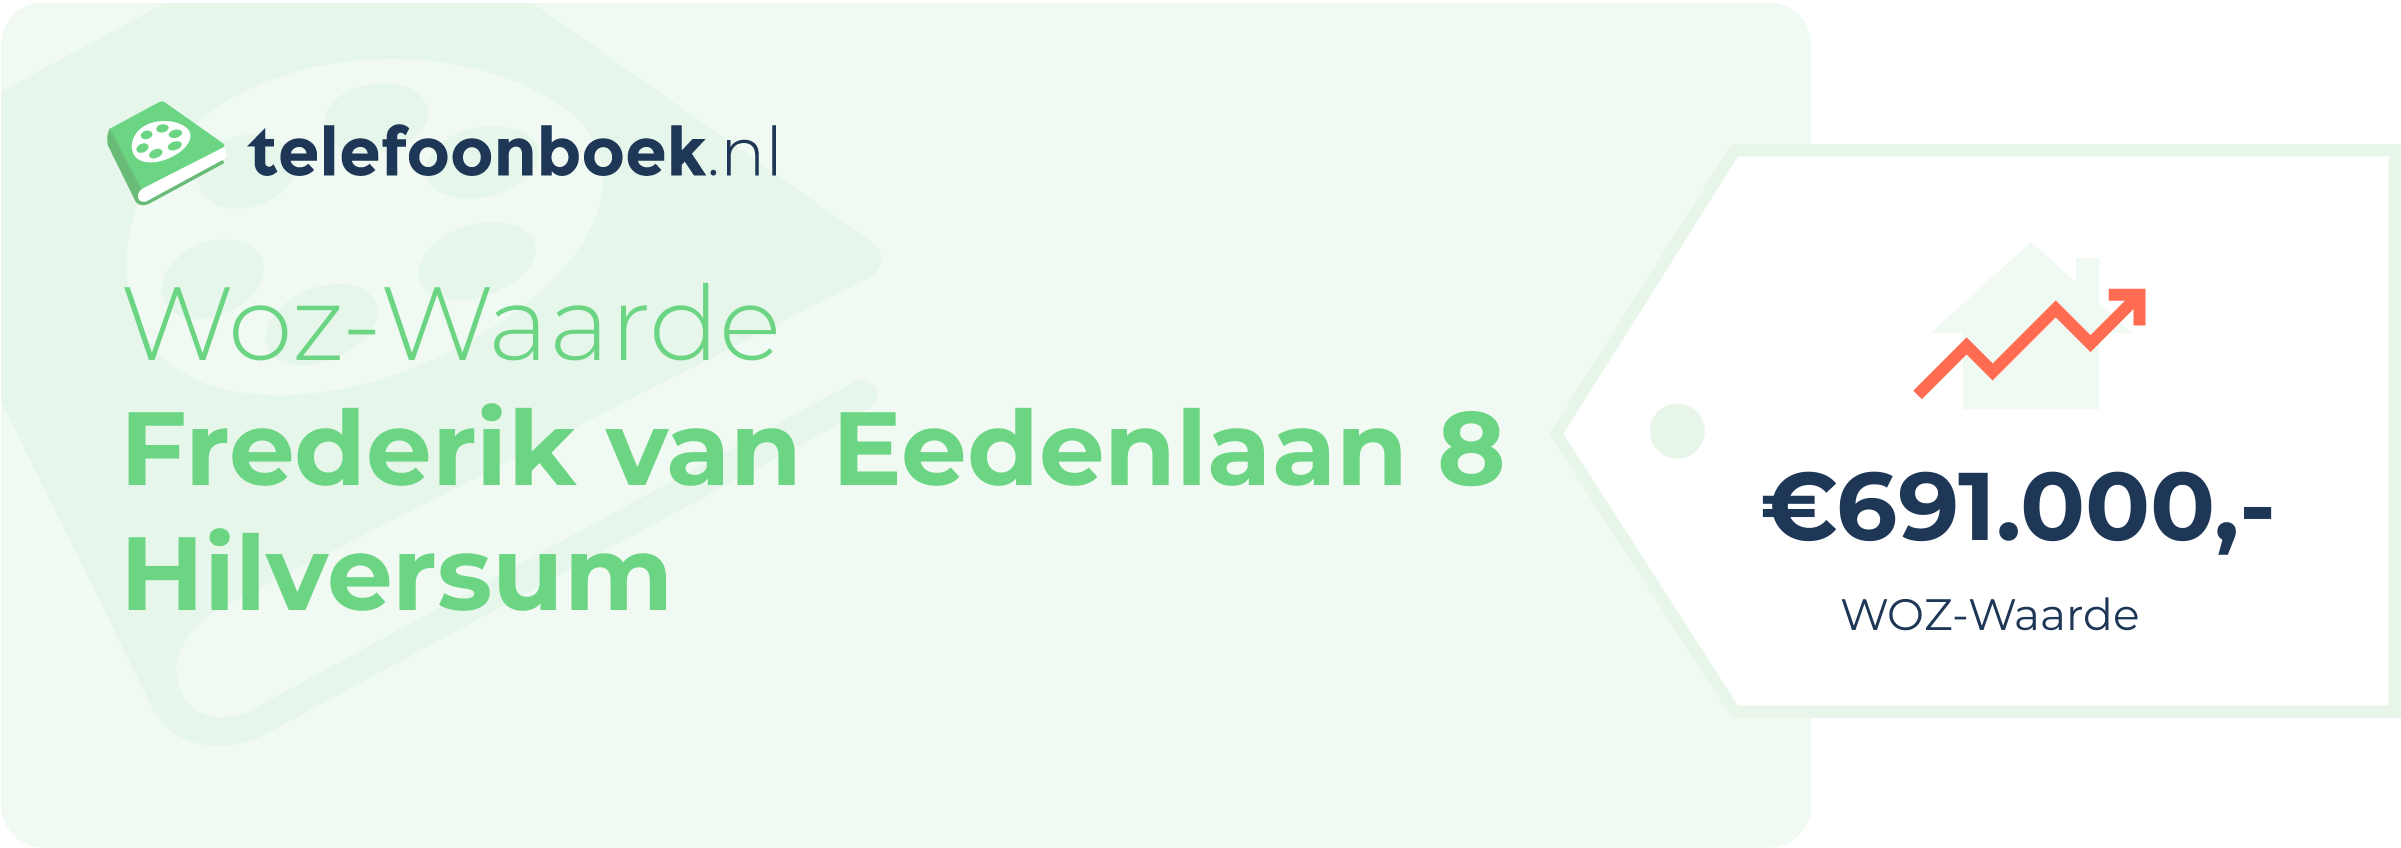 WOZ-waarde Frederik Van Eedenlaan 8 Hilversum